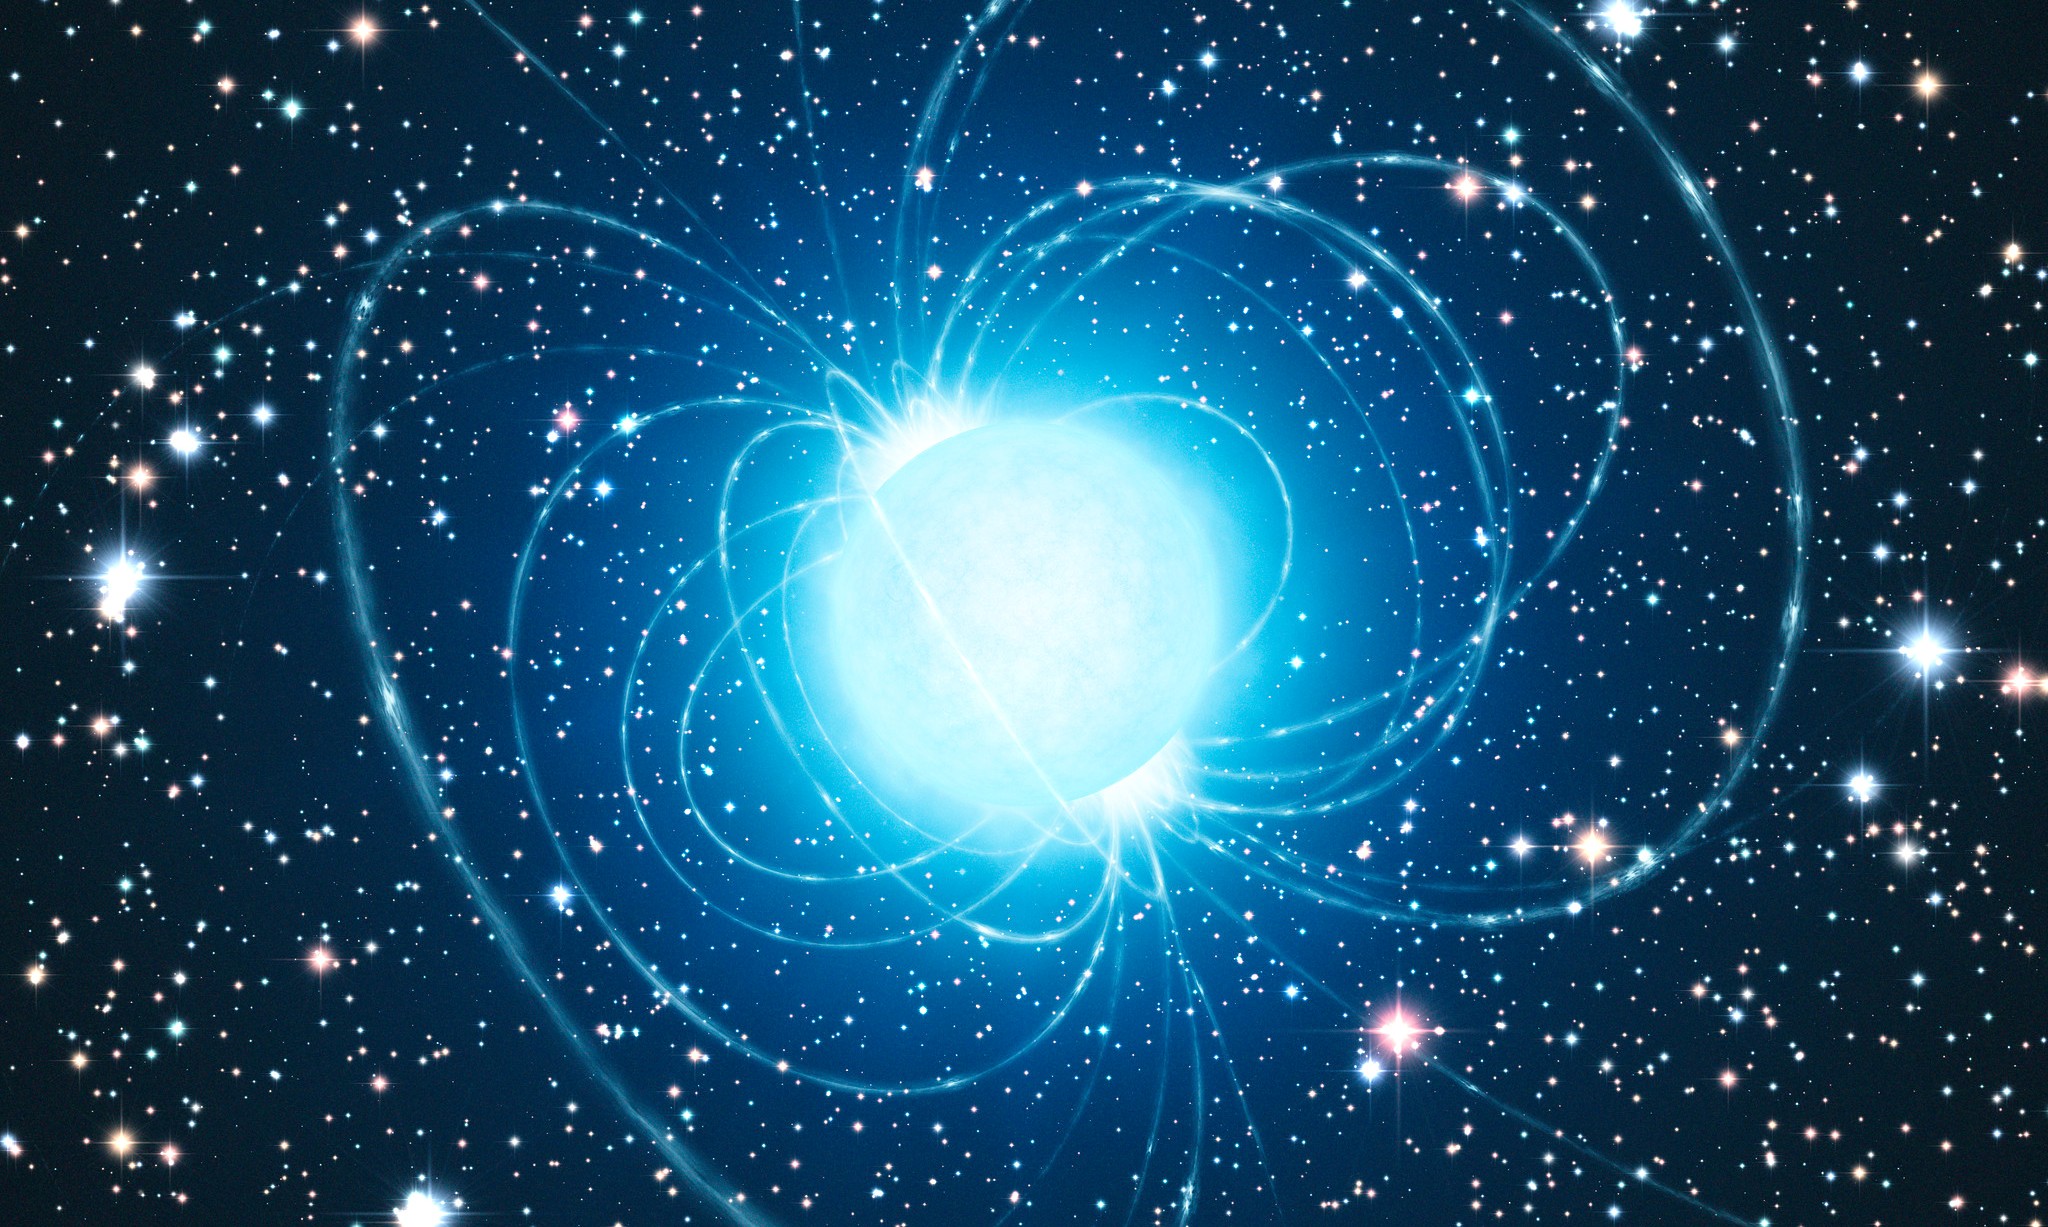 Une image d'artiste montrant les lignes de champs magnétiques d'une étoile à neutrons supposée être RX J1856.5-3754. Cet objet fait partie intégrante d’un ensemble d’étoiles à neutrons baptisé Les Sept Magnifiques. Ce sont des étoiles à neutrons isolées (INS), dépourvues de tout compagnon stellaire, qui n’émettent aucun rayonnement radio (à la différence des pulsars) et ne sont pas environnées de matière issue d’une supernova. © ESO, L. Calçada 